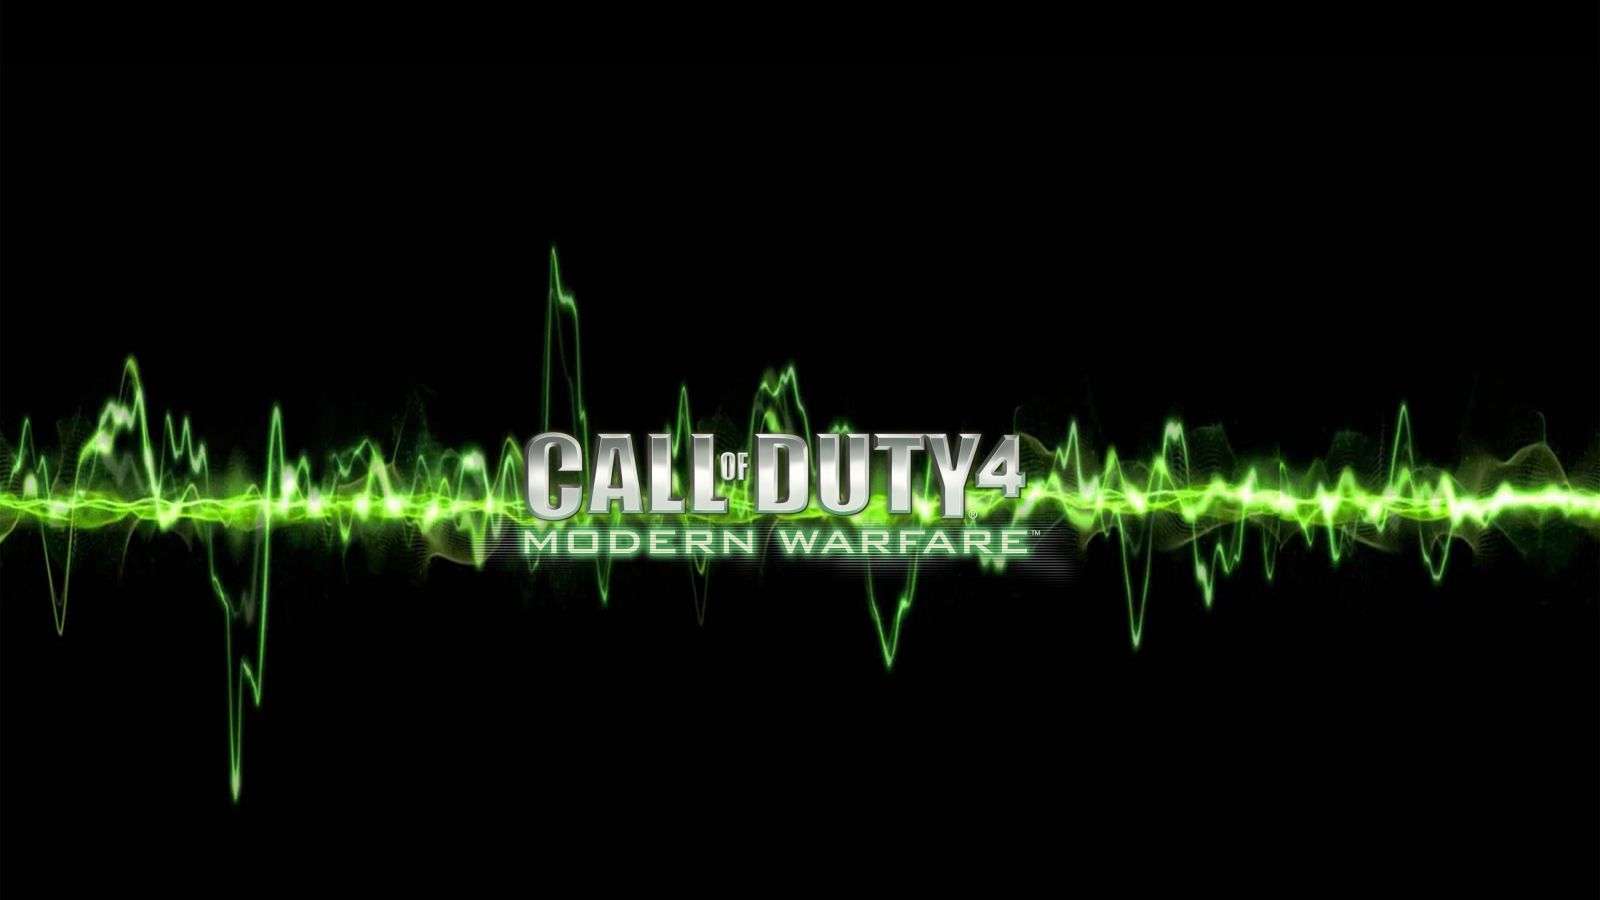 Call of duty 4 modern warfare wallpaper Wallpaper Wide HD